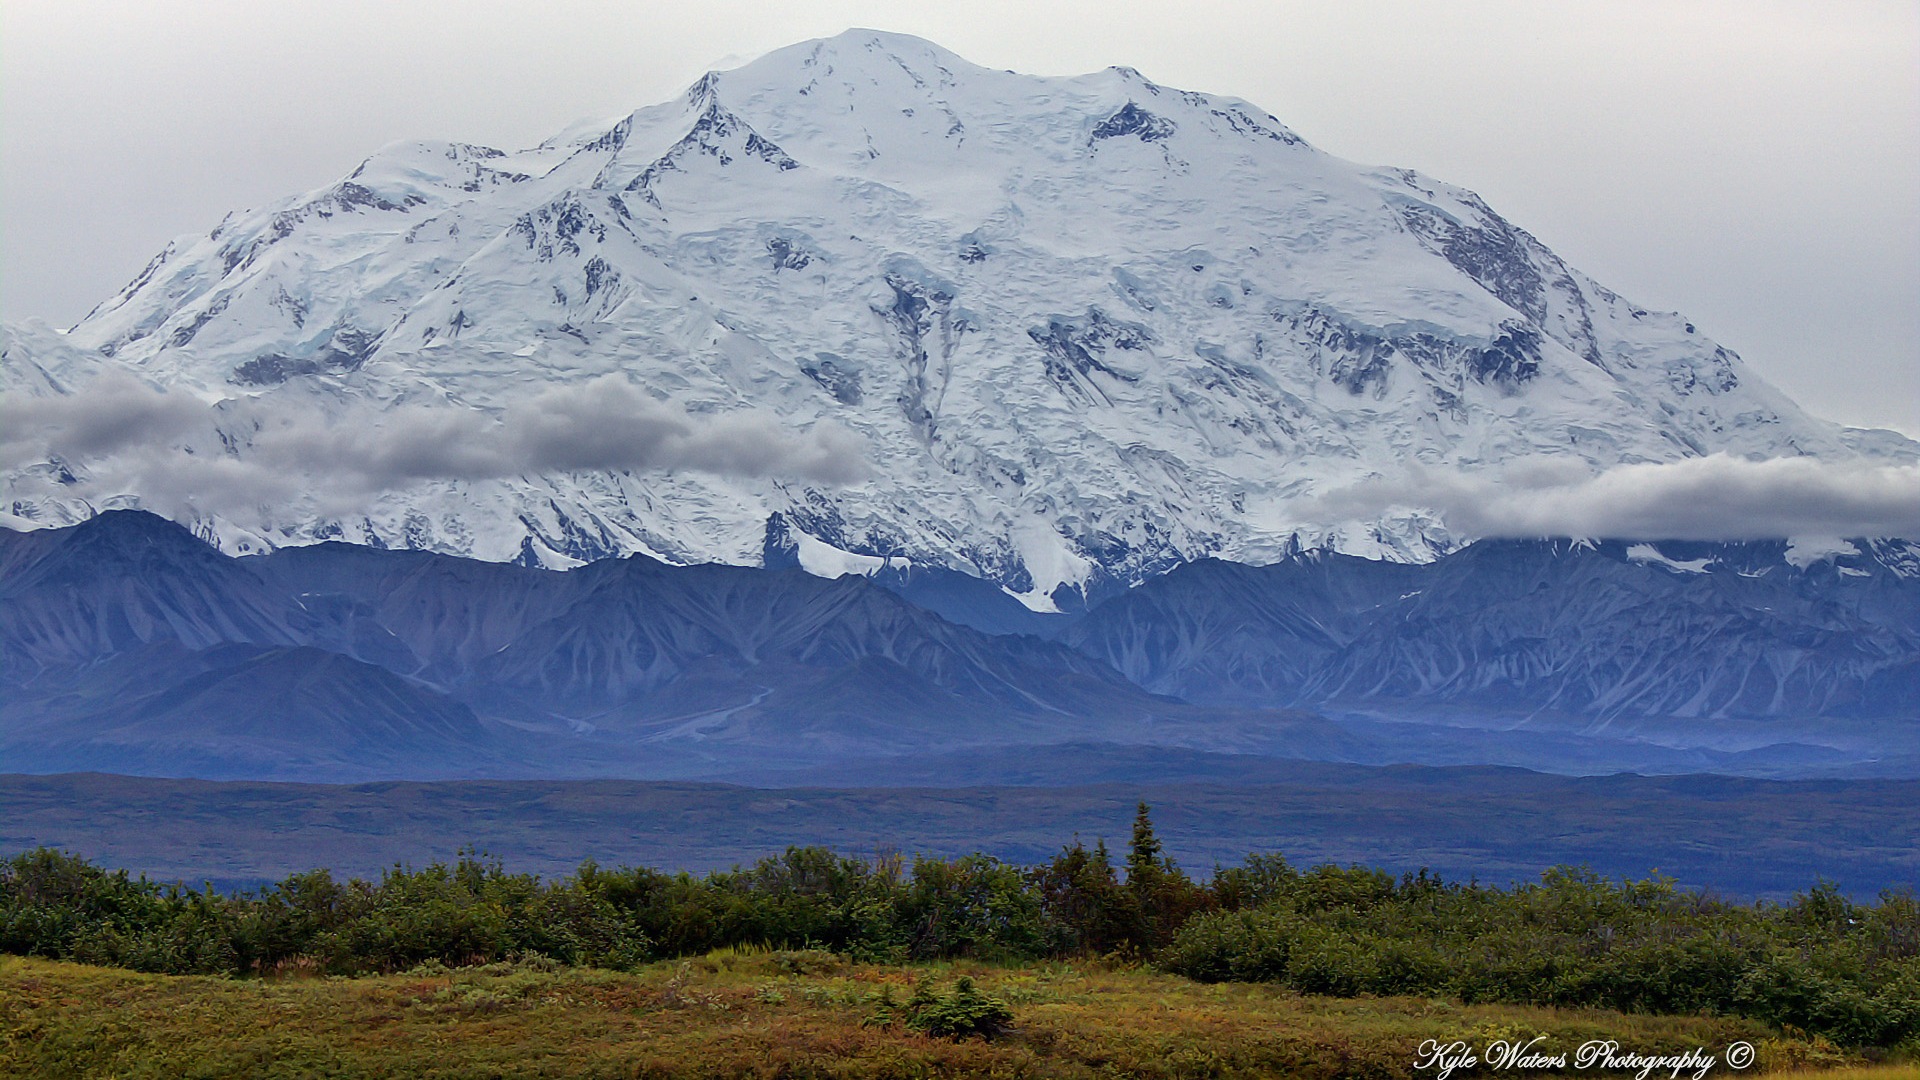 Windows 8 thème fond d'écran: Alaska paysage #10 - 1920x1080